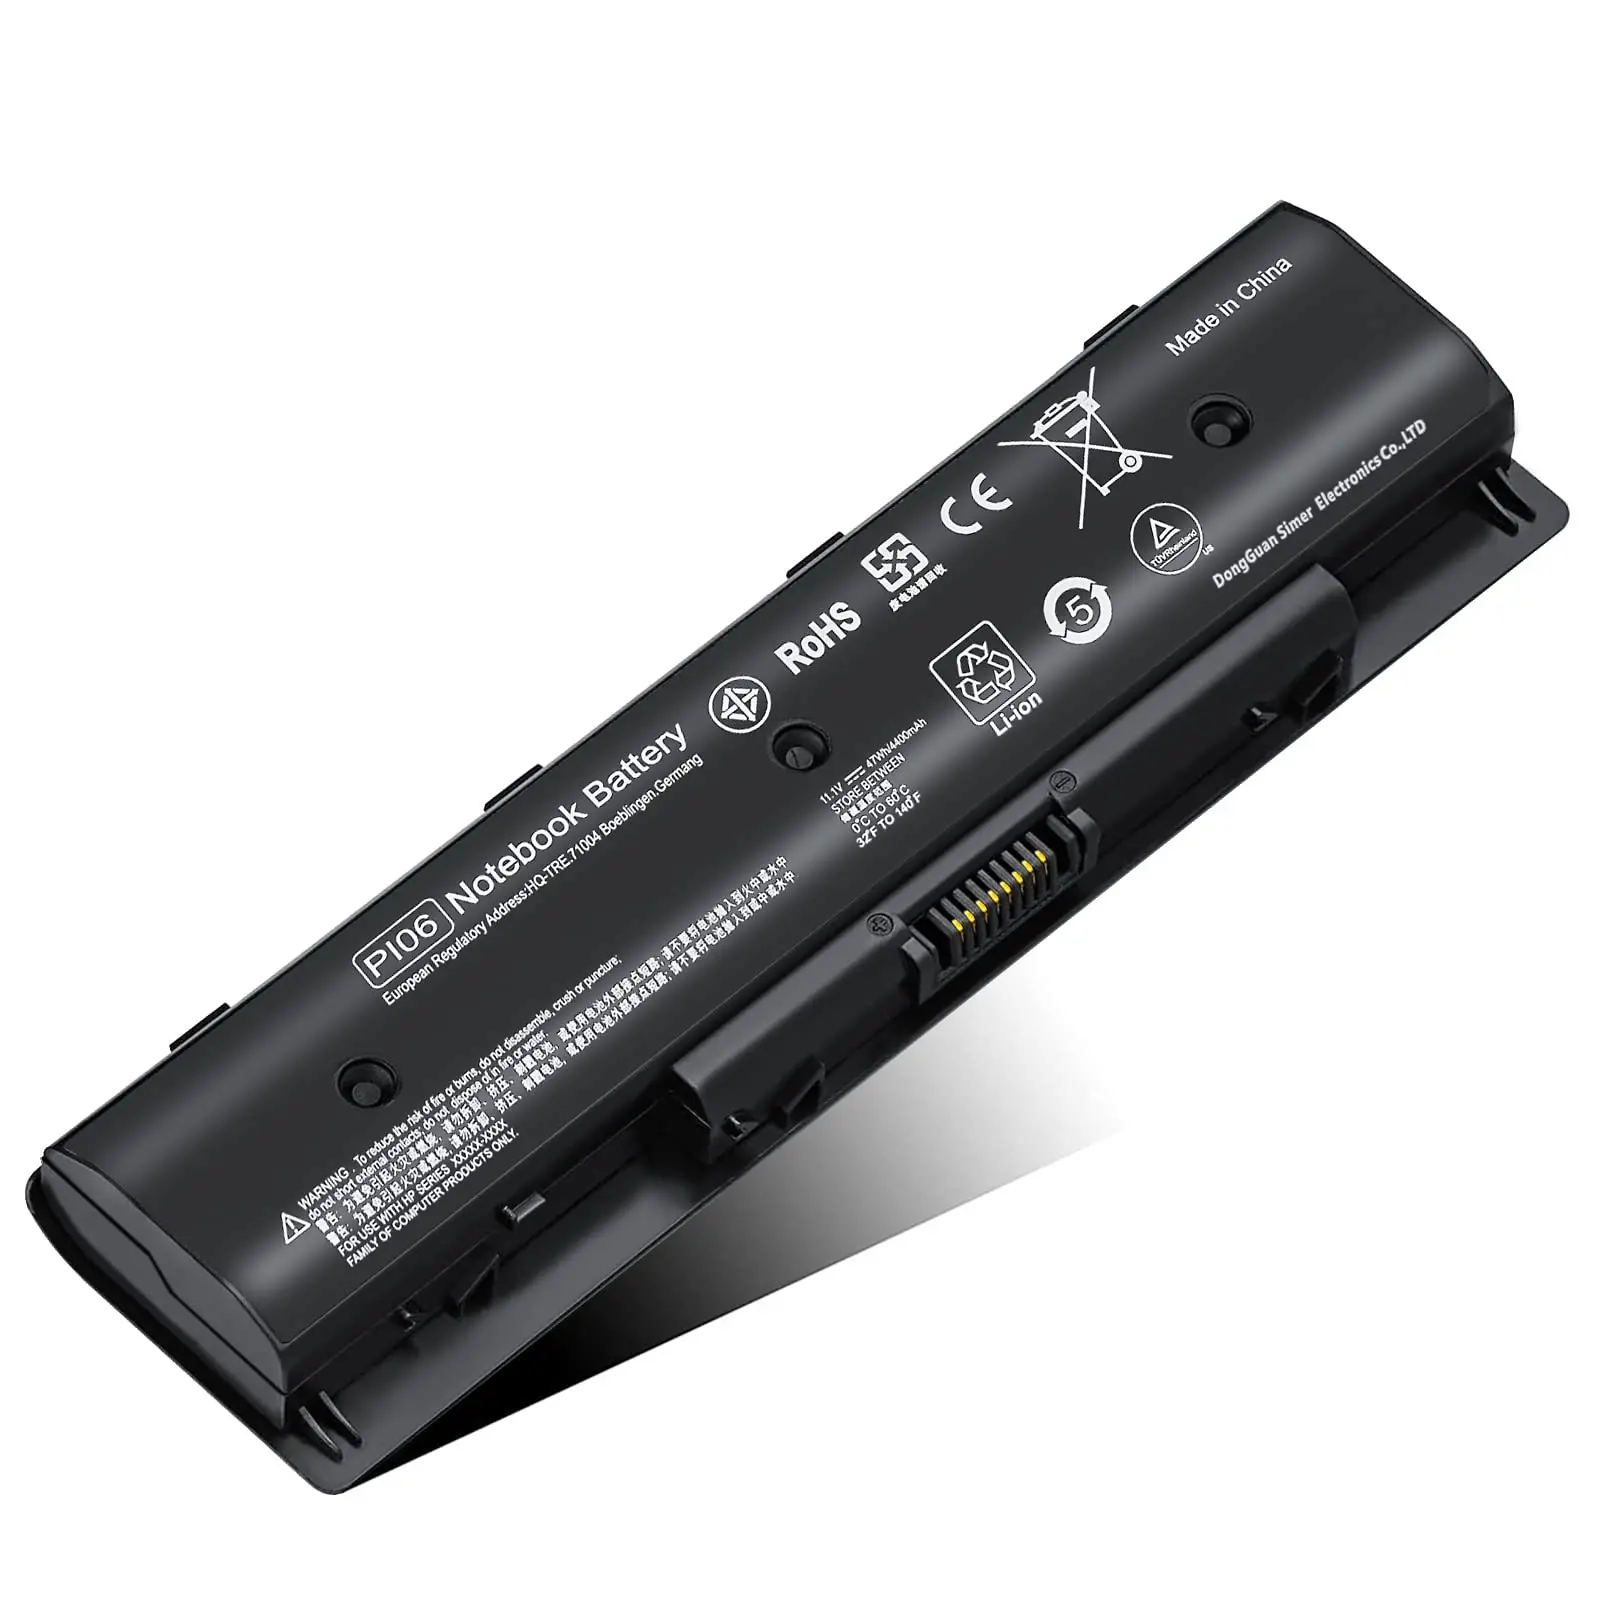 baterias para laptop - Qué tipos de baterías para equipos portátiles existen